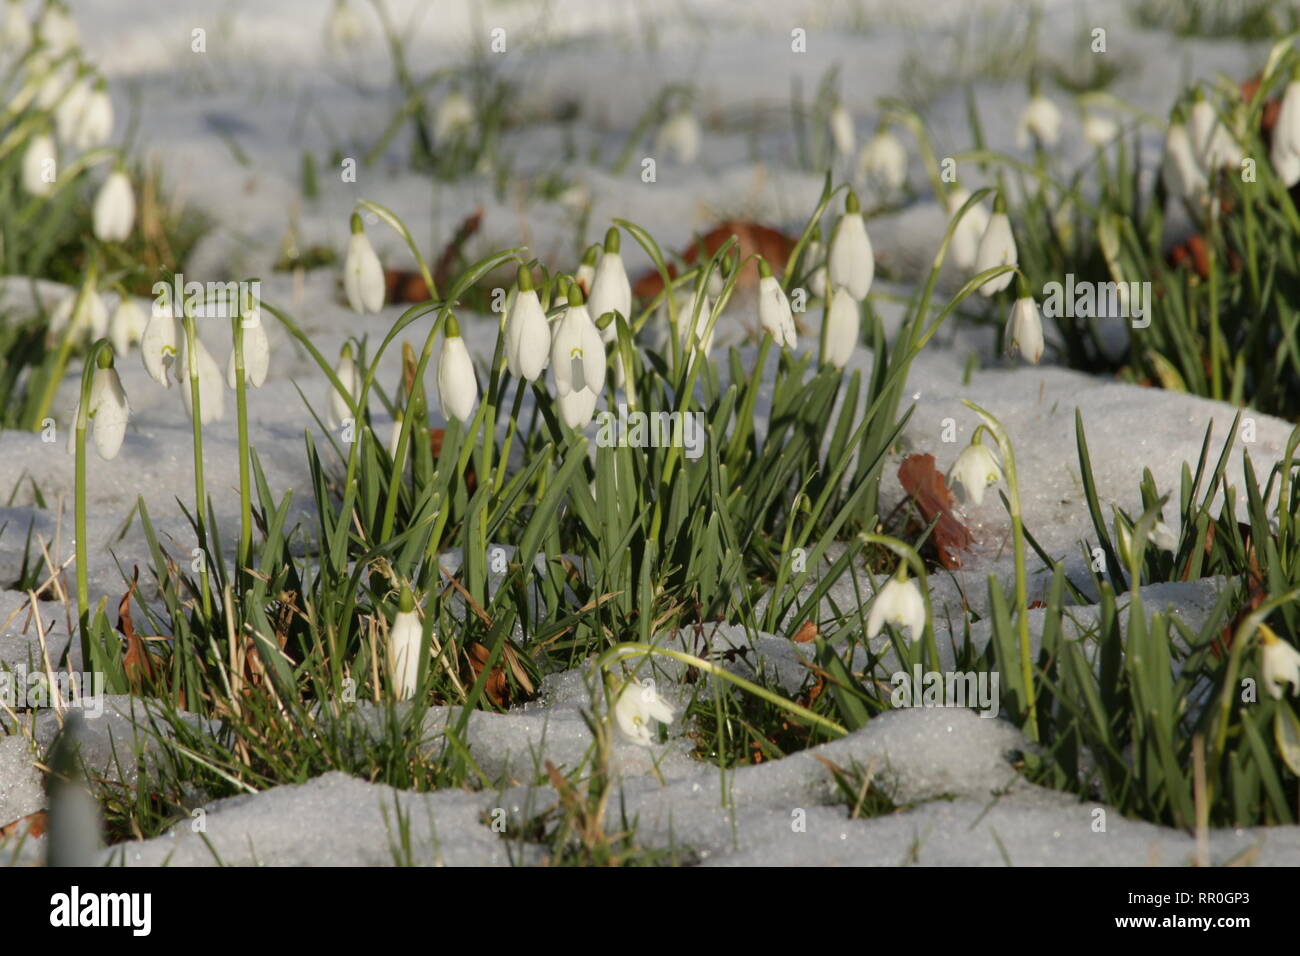 Schneeglöckchen wachsende bei schnee gras aus Augenhöhe im Querformat angezeigt Stockfoto